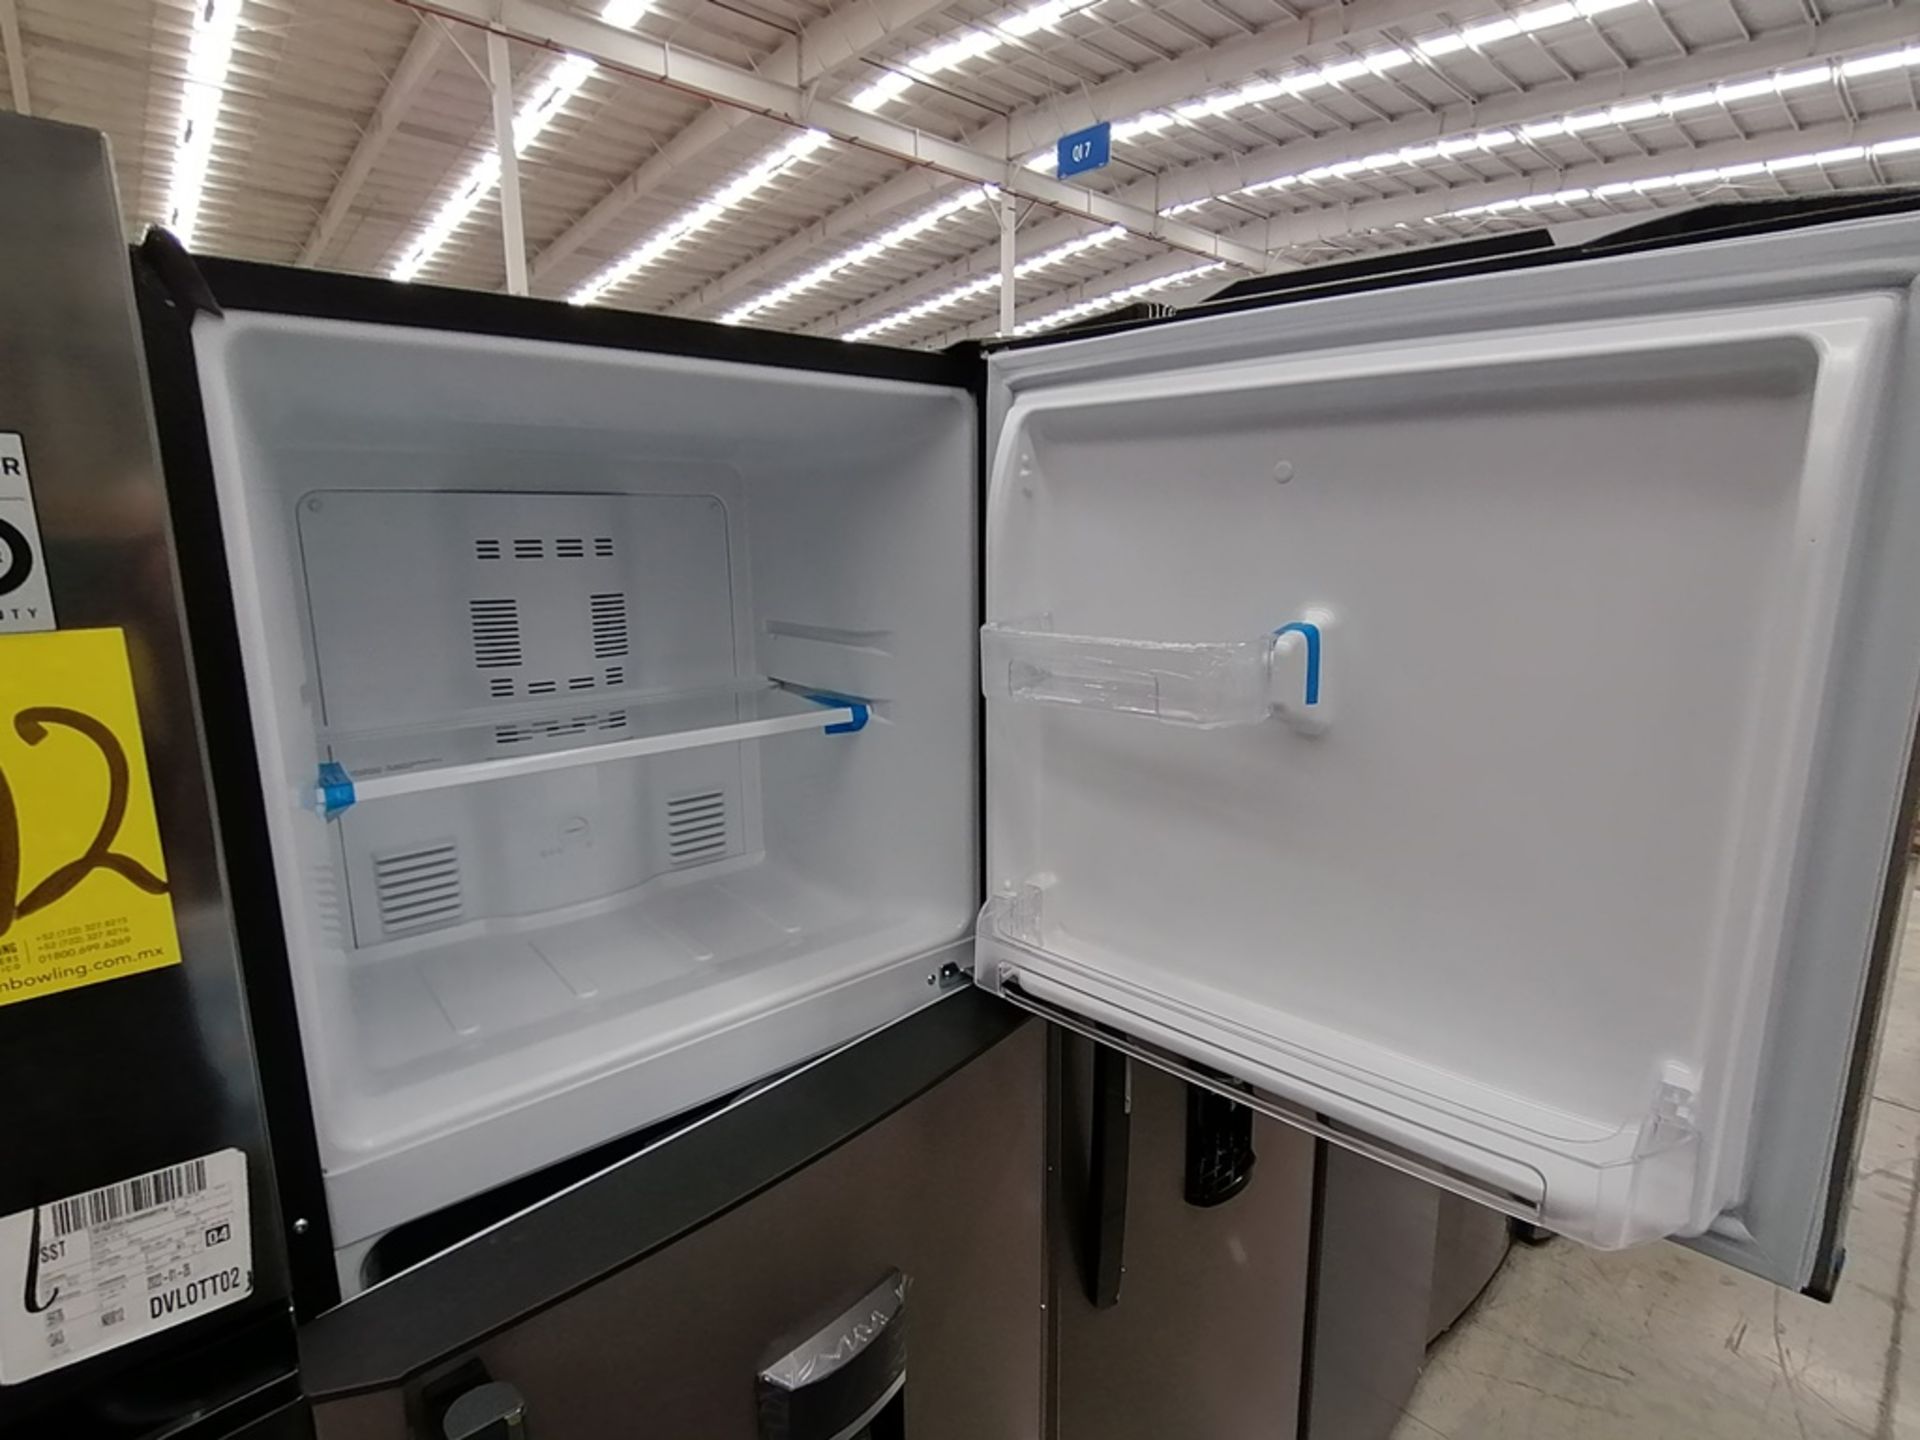 1 Refrigerador con Dispensador de Agua Marca Mabe, Color Gris, Modelo RMA300FJMR, Serie 2112B707142 - Image 10 of 13